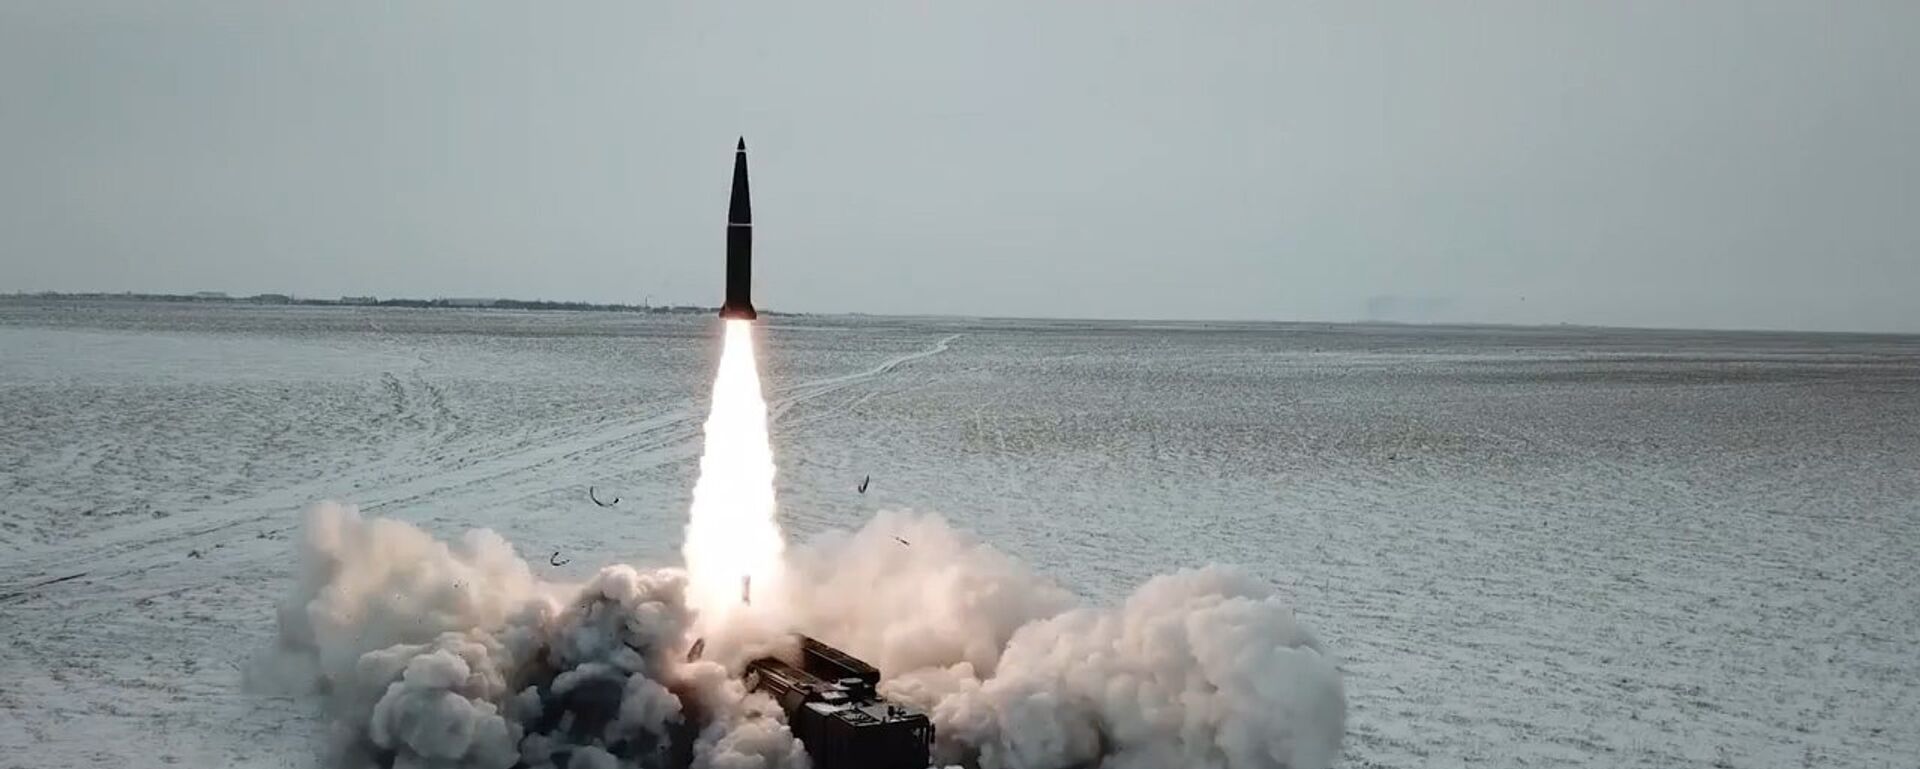 Боевой пуск ракеты ОТРК Искандер-М состоялся на полигоне Капустин Яр - Sputnik Латвия, 1920, 05.03.2018